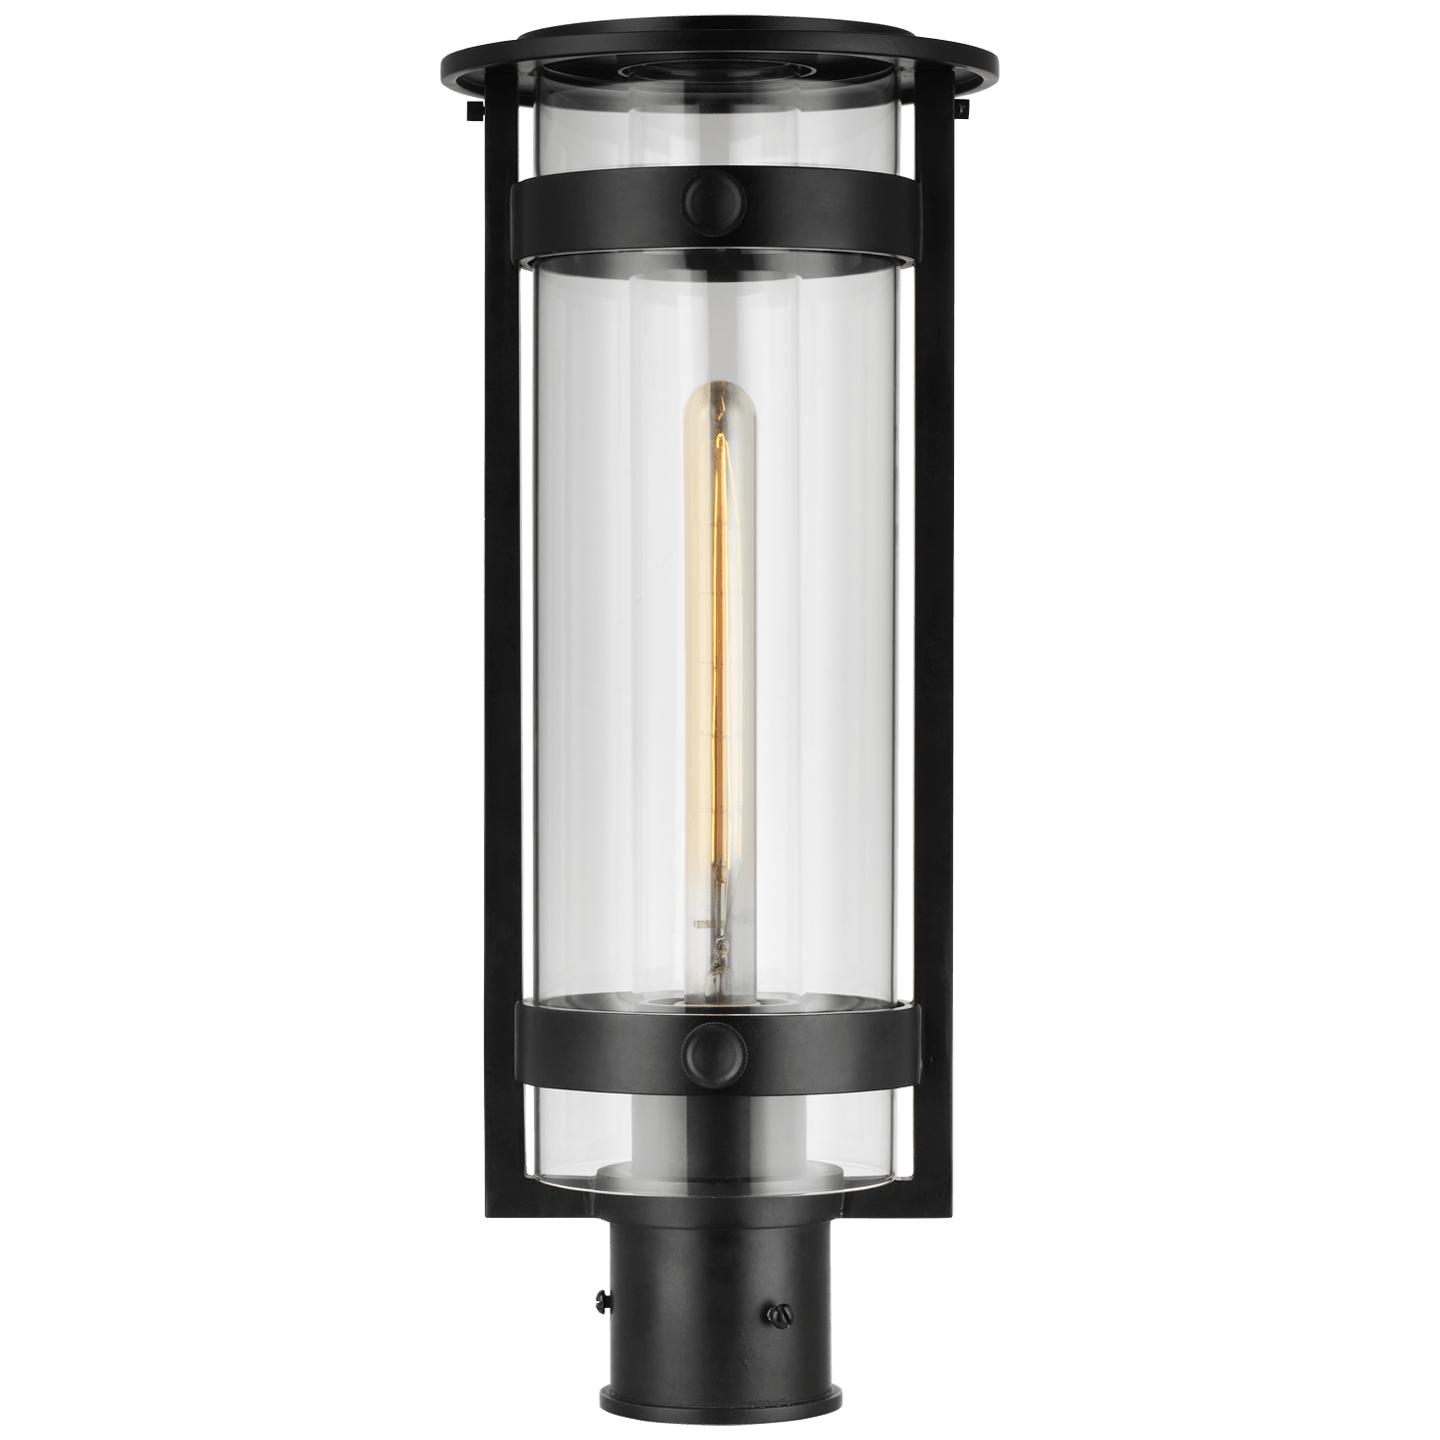 Купить Уличный фонарь Kears Medium Post Lantern в интернет-магазине roooms.ru